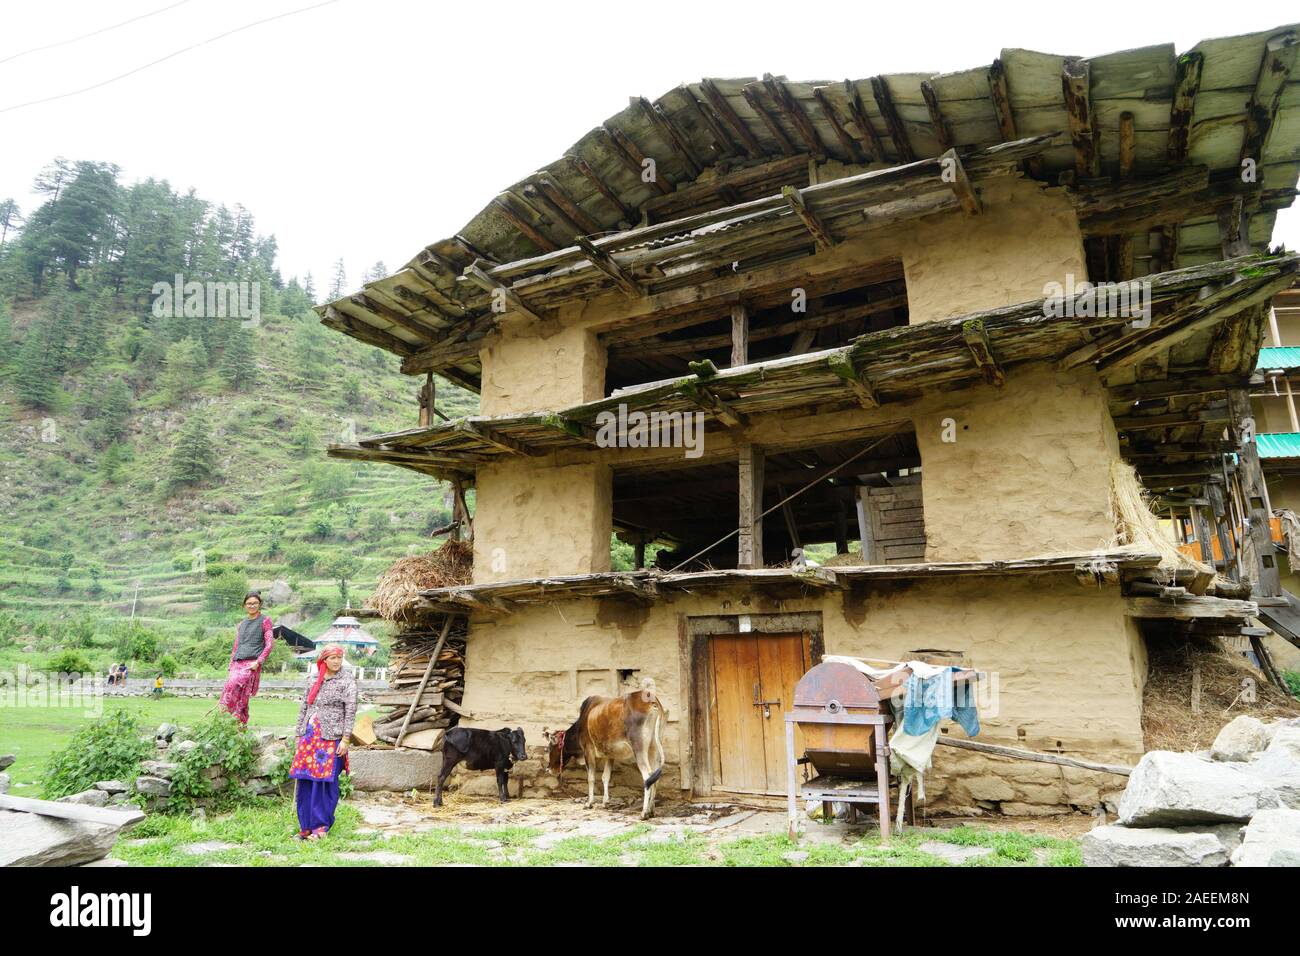 Weizen-Haus, Sarchi Dorf, Tirthan Tal, Himachal Pradesh, Indien, Asien  Stockfotografie - Alamy